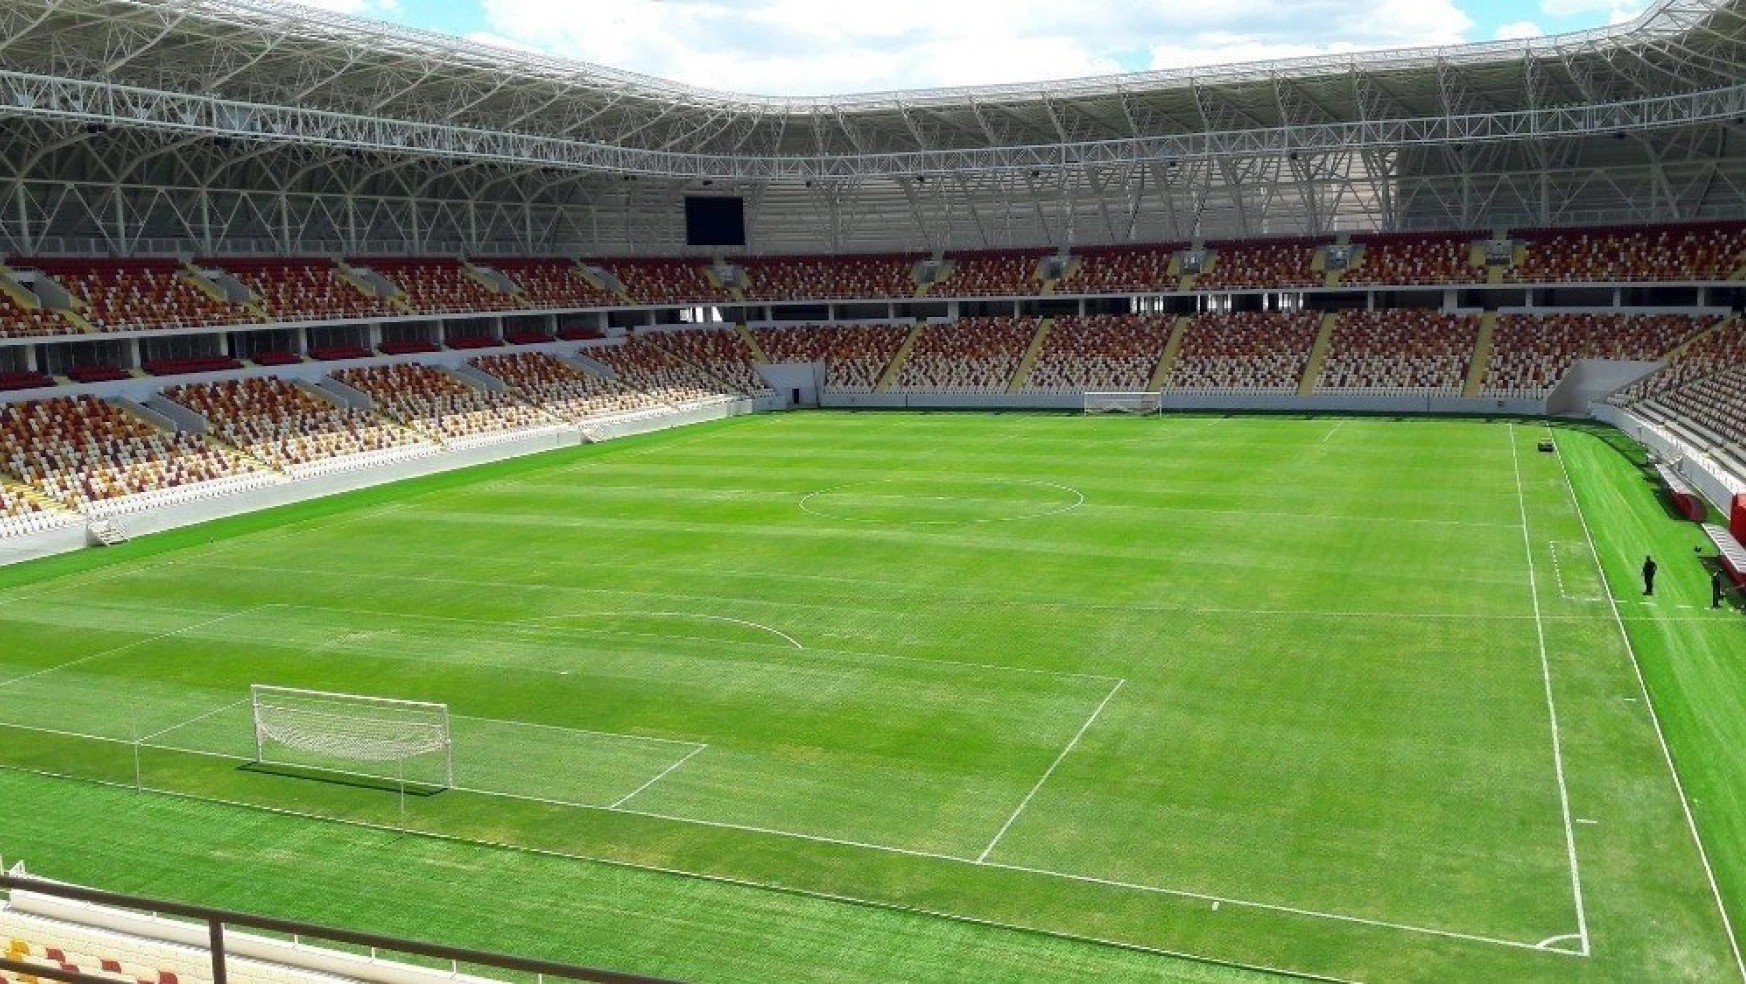 Yeni Malatyaspor, Antalyaspor maçını İnönü Stadı'nda oynayacak
